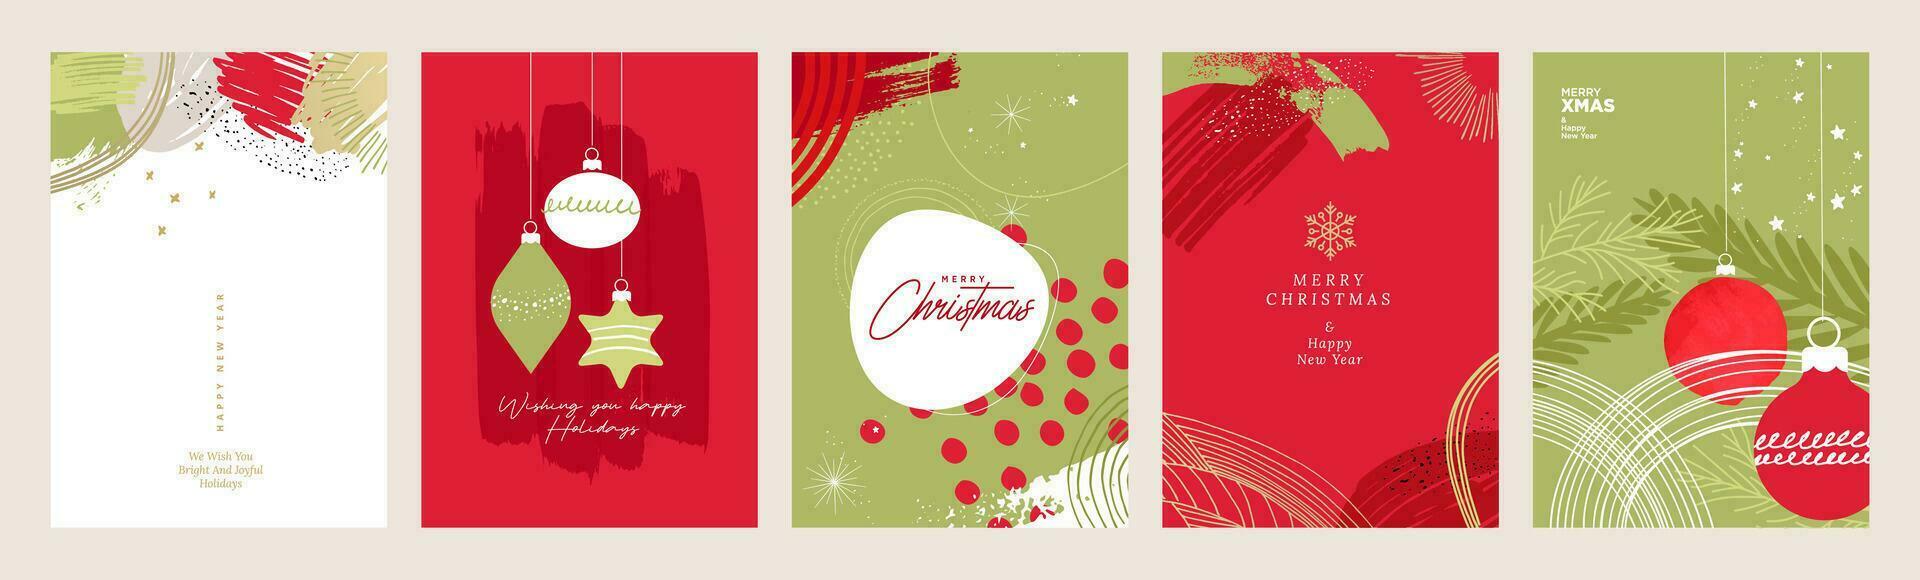 frohe weihnachten und guten rutsch ins neue jahr grußkarten. vektorillustrationskonzepte für hintergrund, grußkarte, partyeinladungskarte, website-banner, social-media-banner, marketingmaterial. vektor